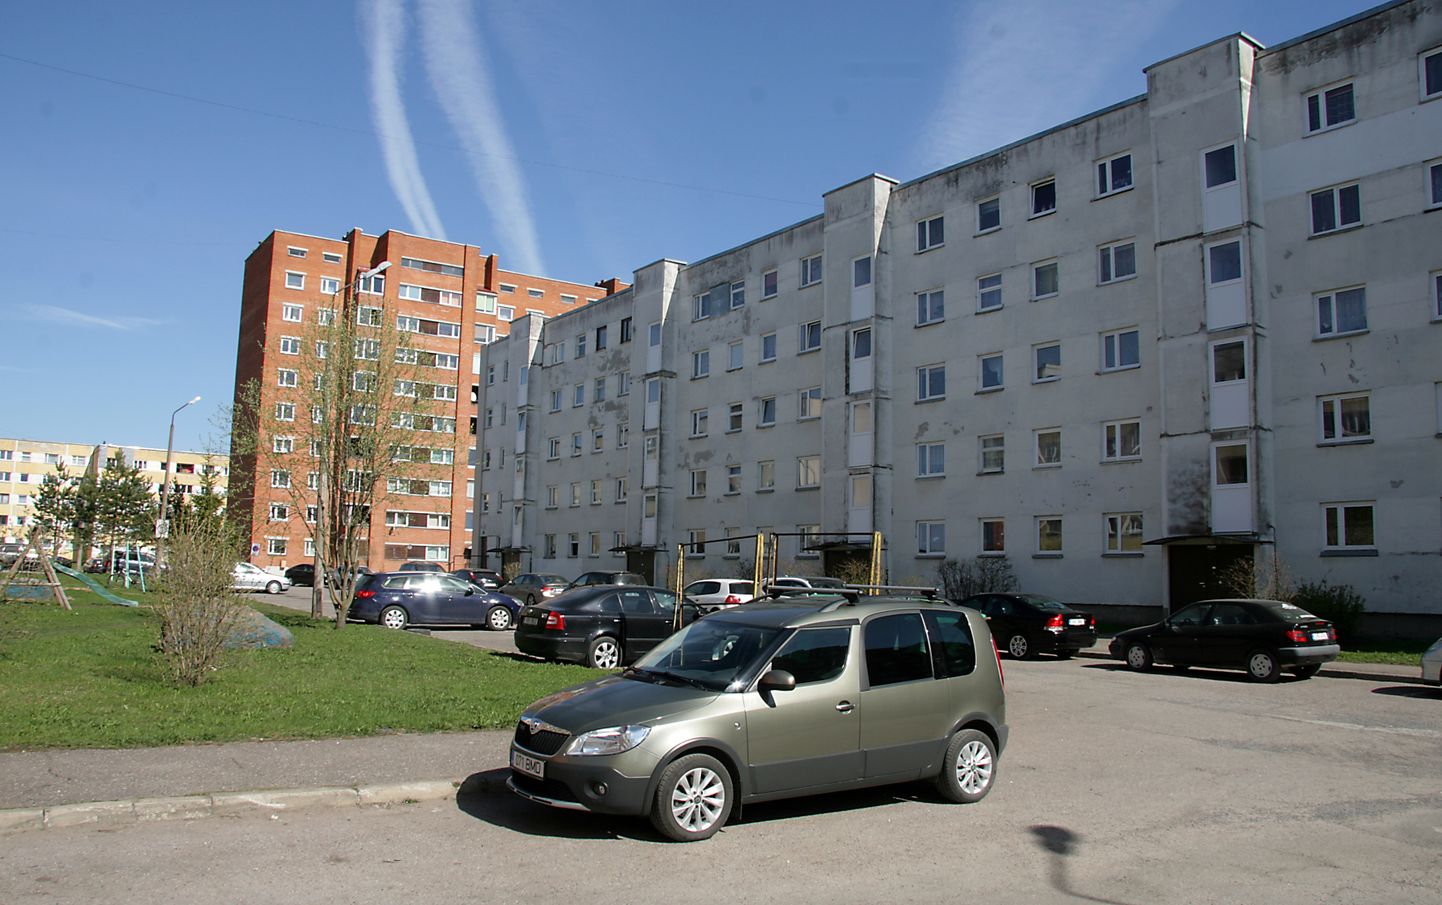 Многоквартирные дома в Ахтме.